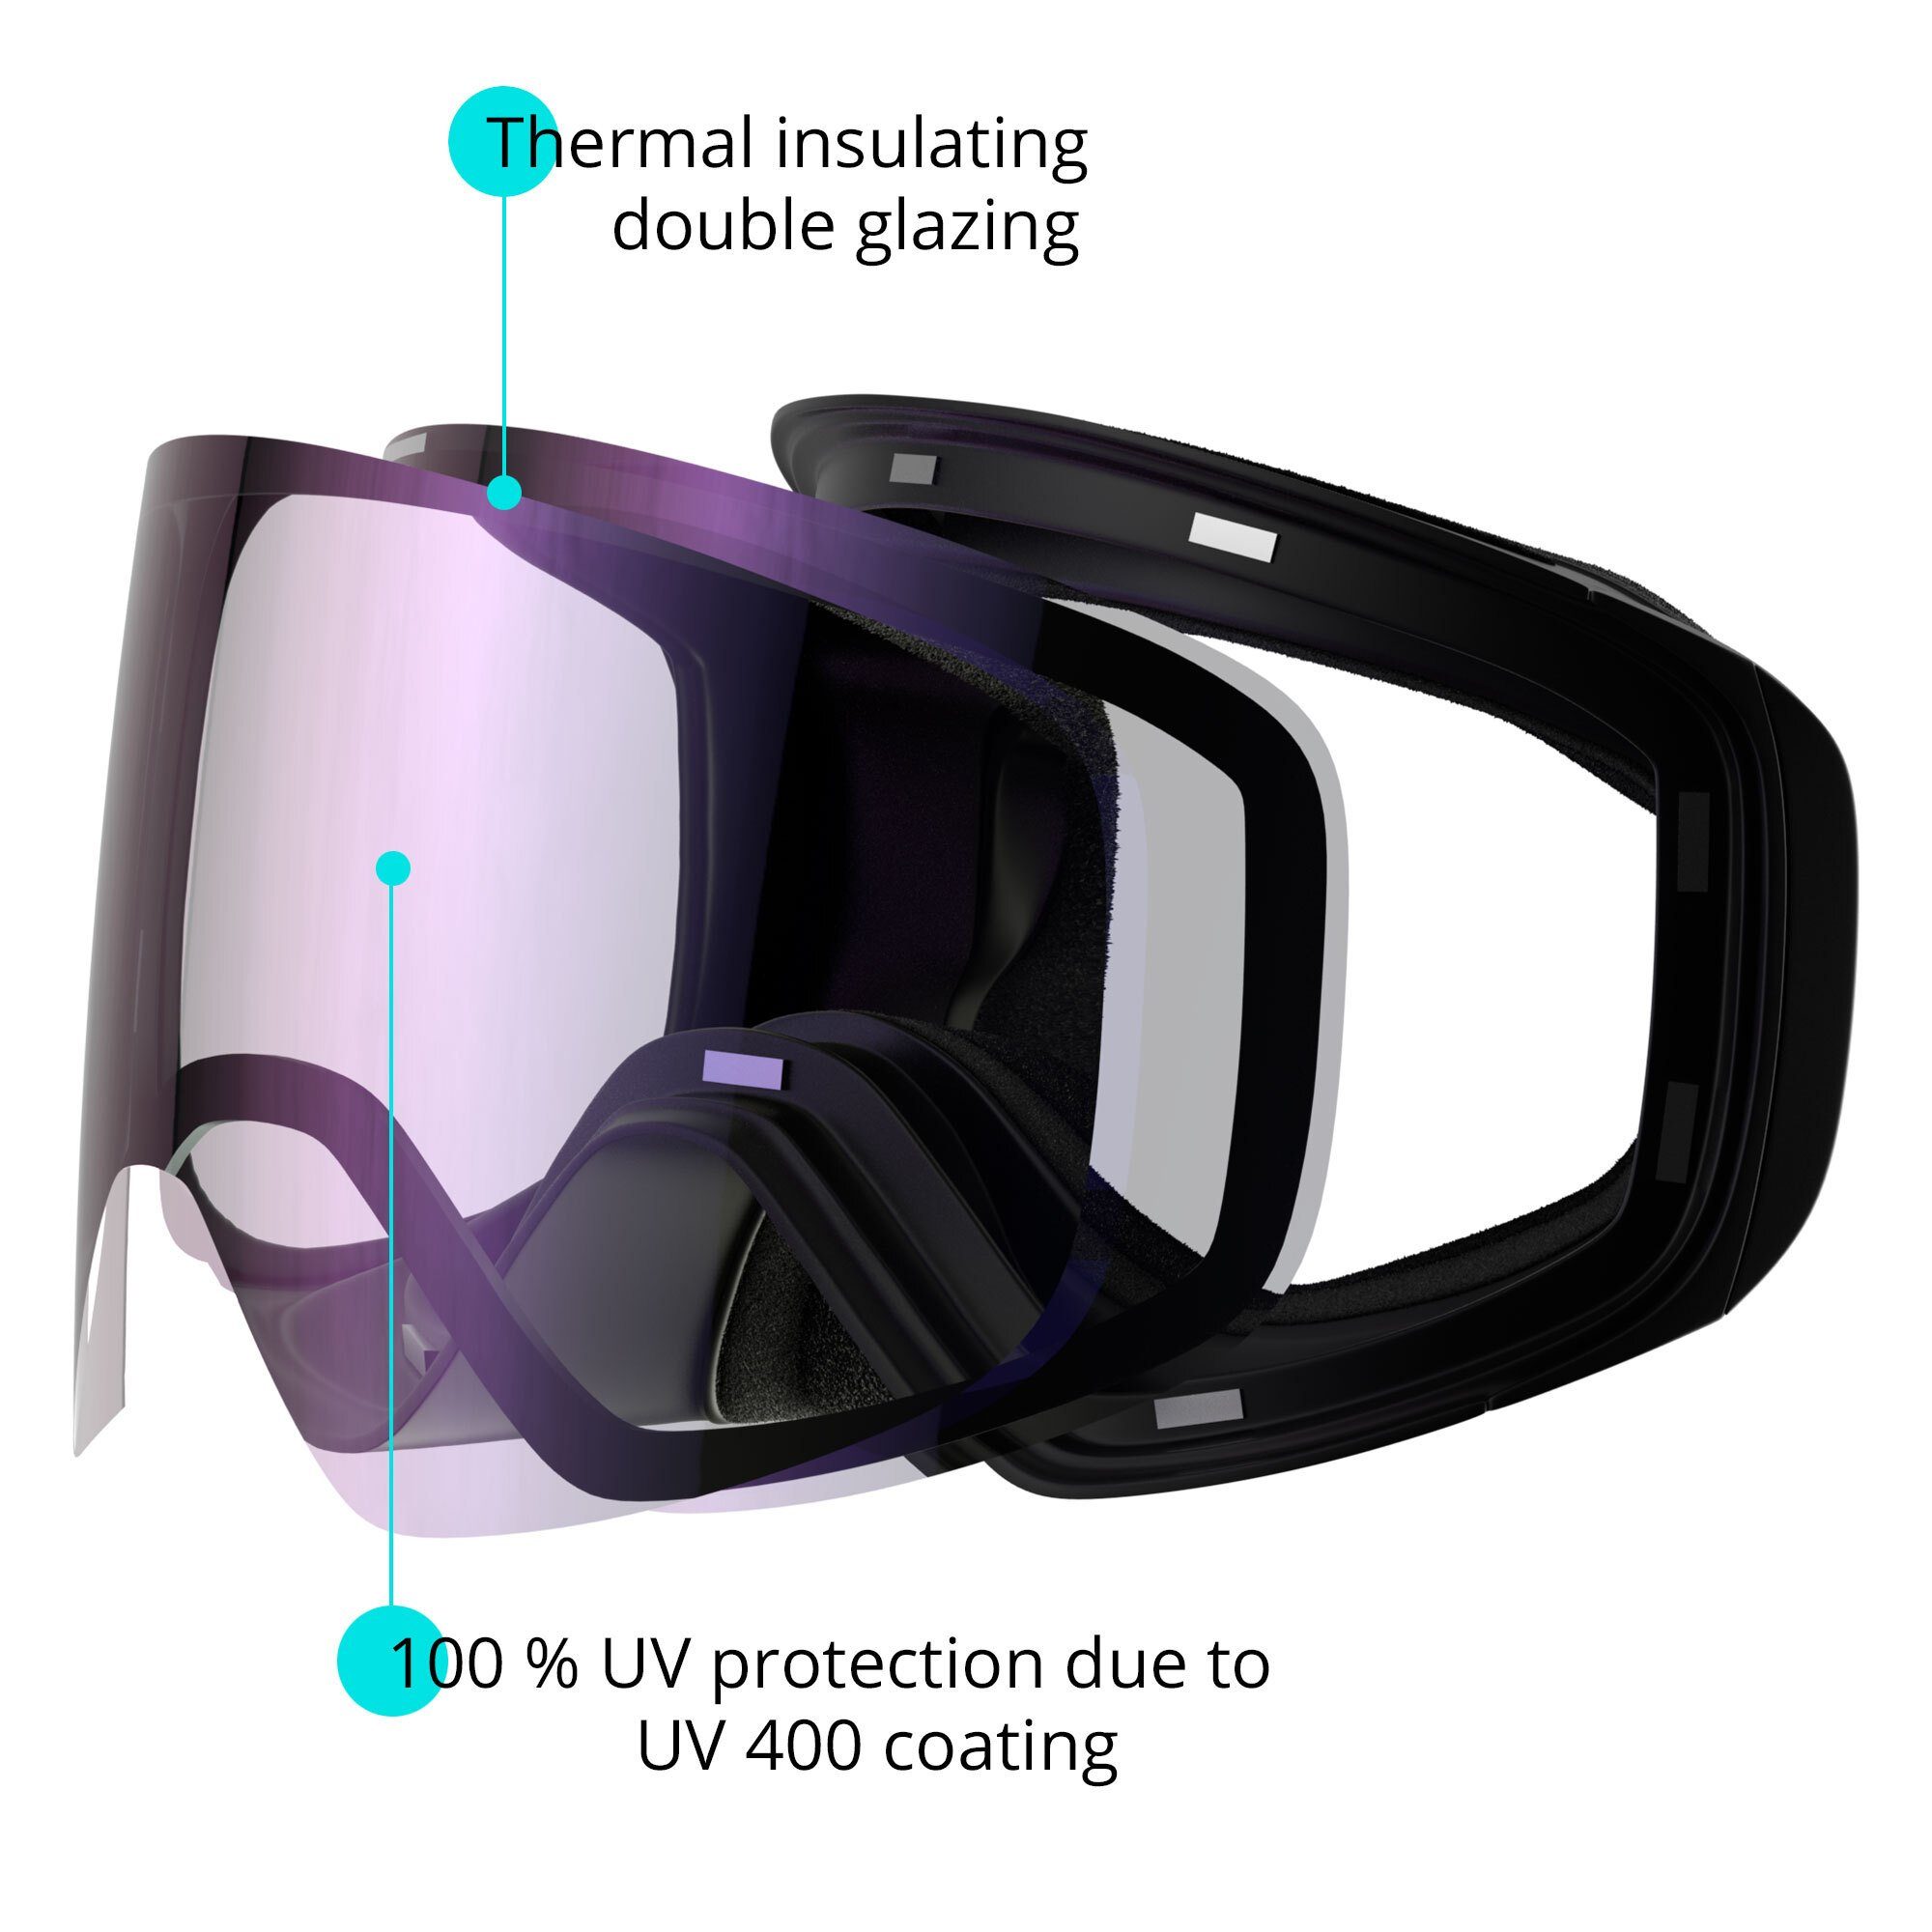 YEAZ Skibrille für APEX, Gläser, Magnet-Wechsel-System silber/schwarz